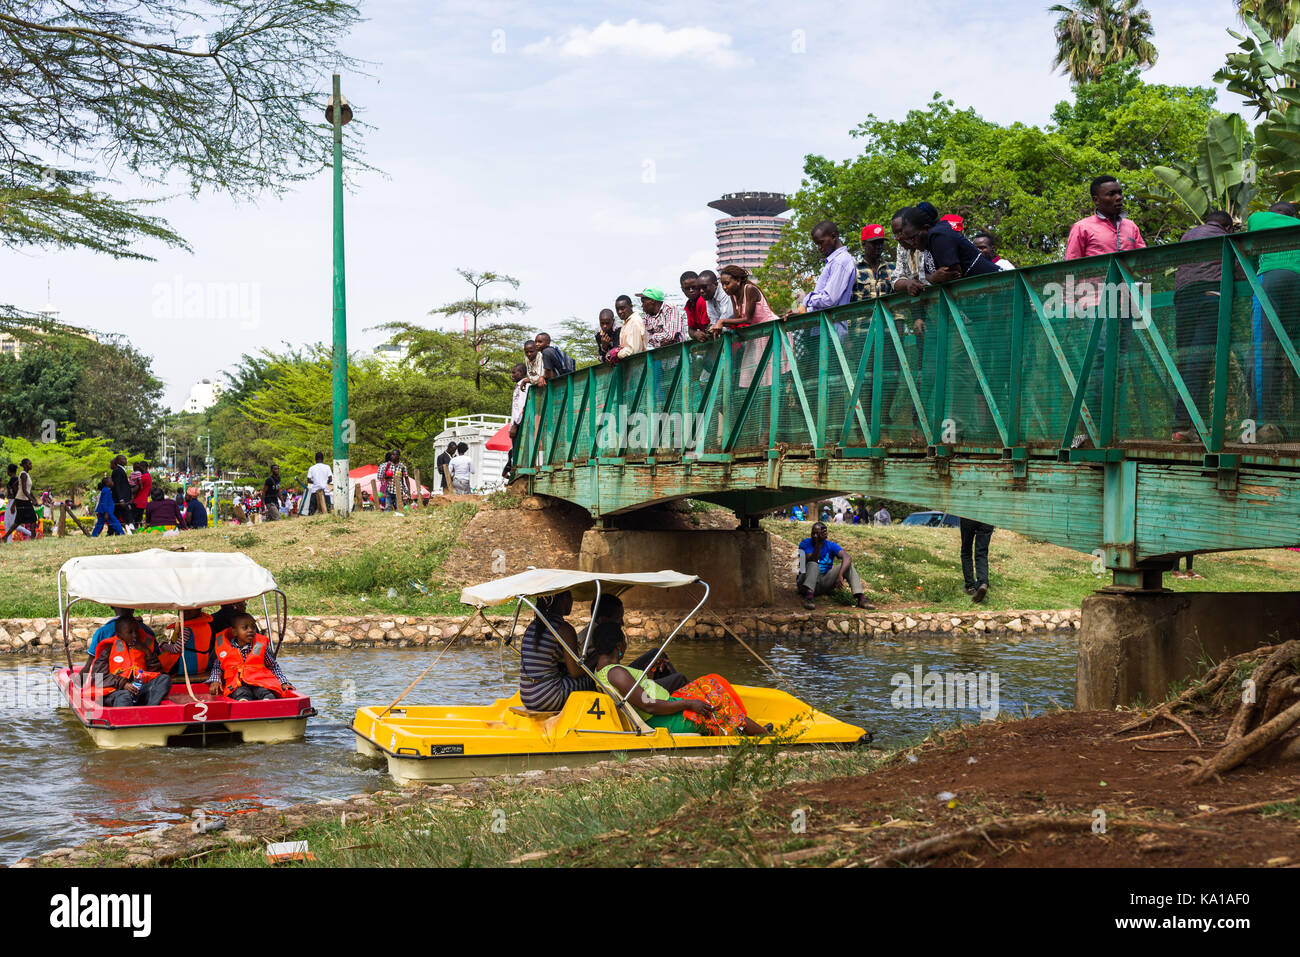 Les personnes bénéficiant de colporter des promenades en bateau dans le cadre d'un petit pont avec les gens qui regardent, Uhuru Park, Nairobi, Kenya, Afrique de l'Est Banque D'Images